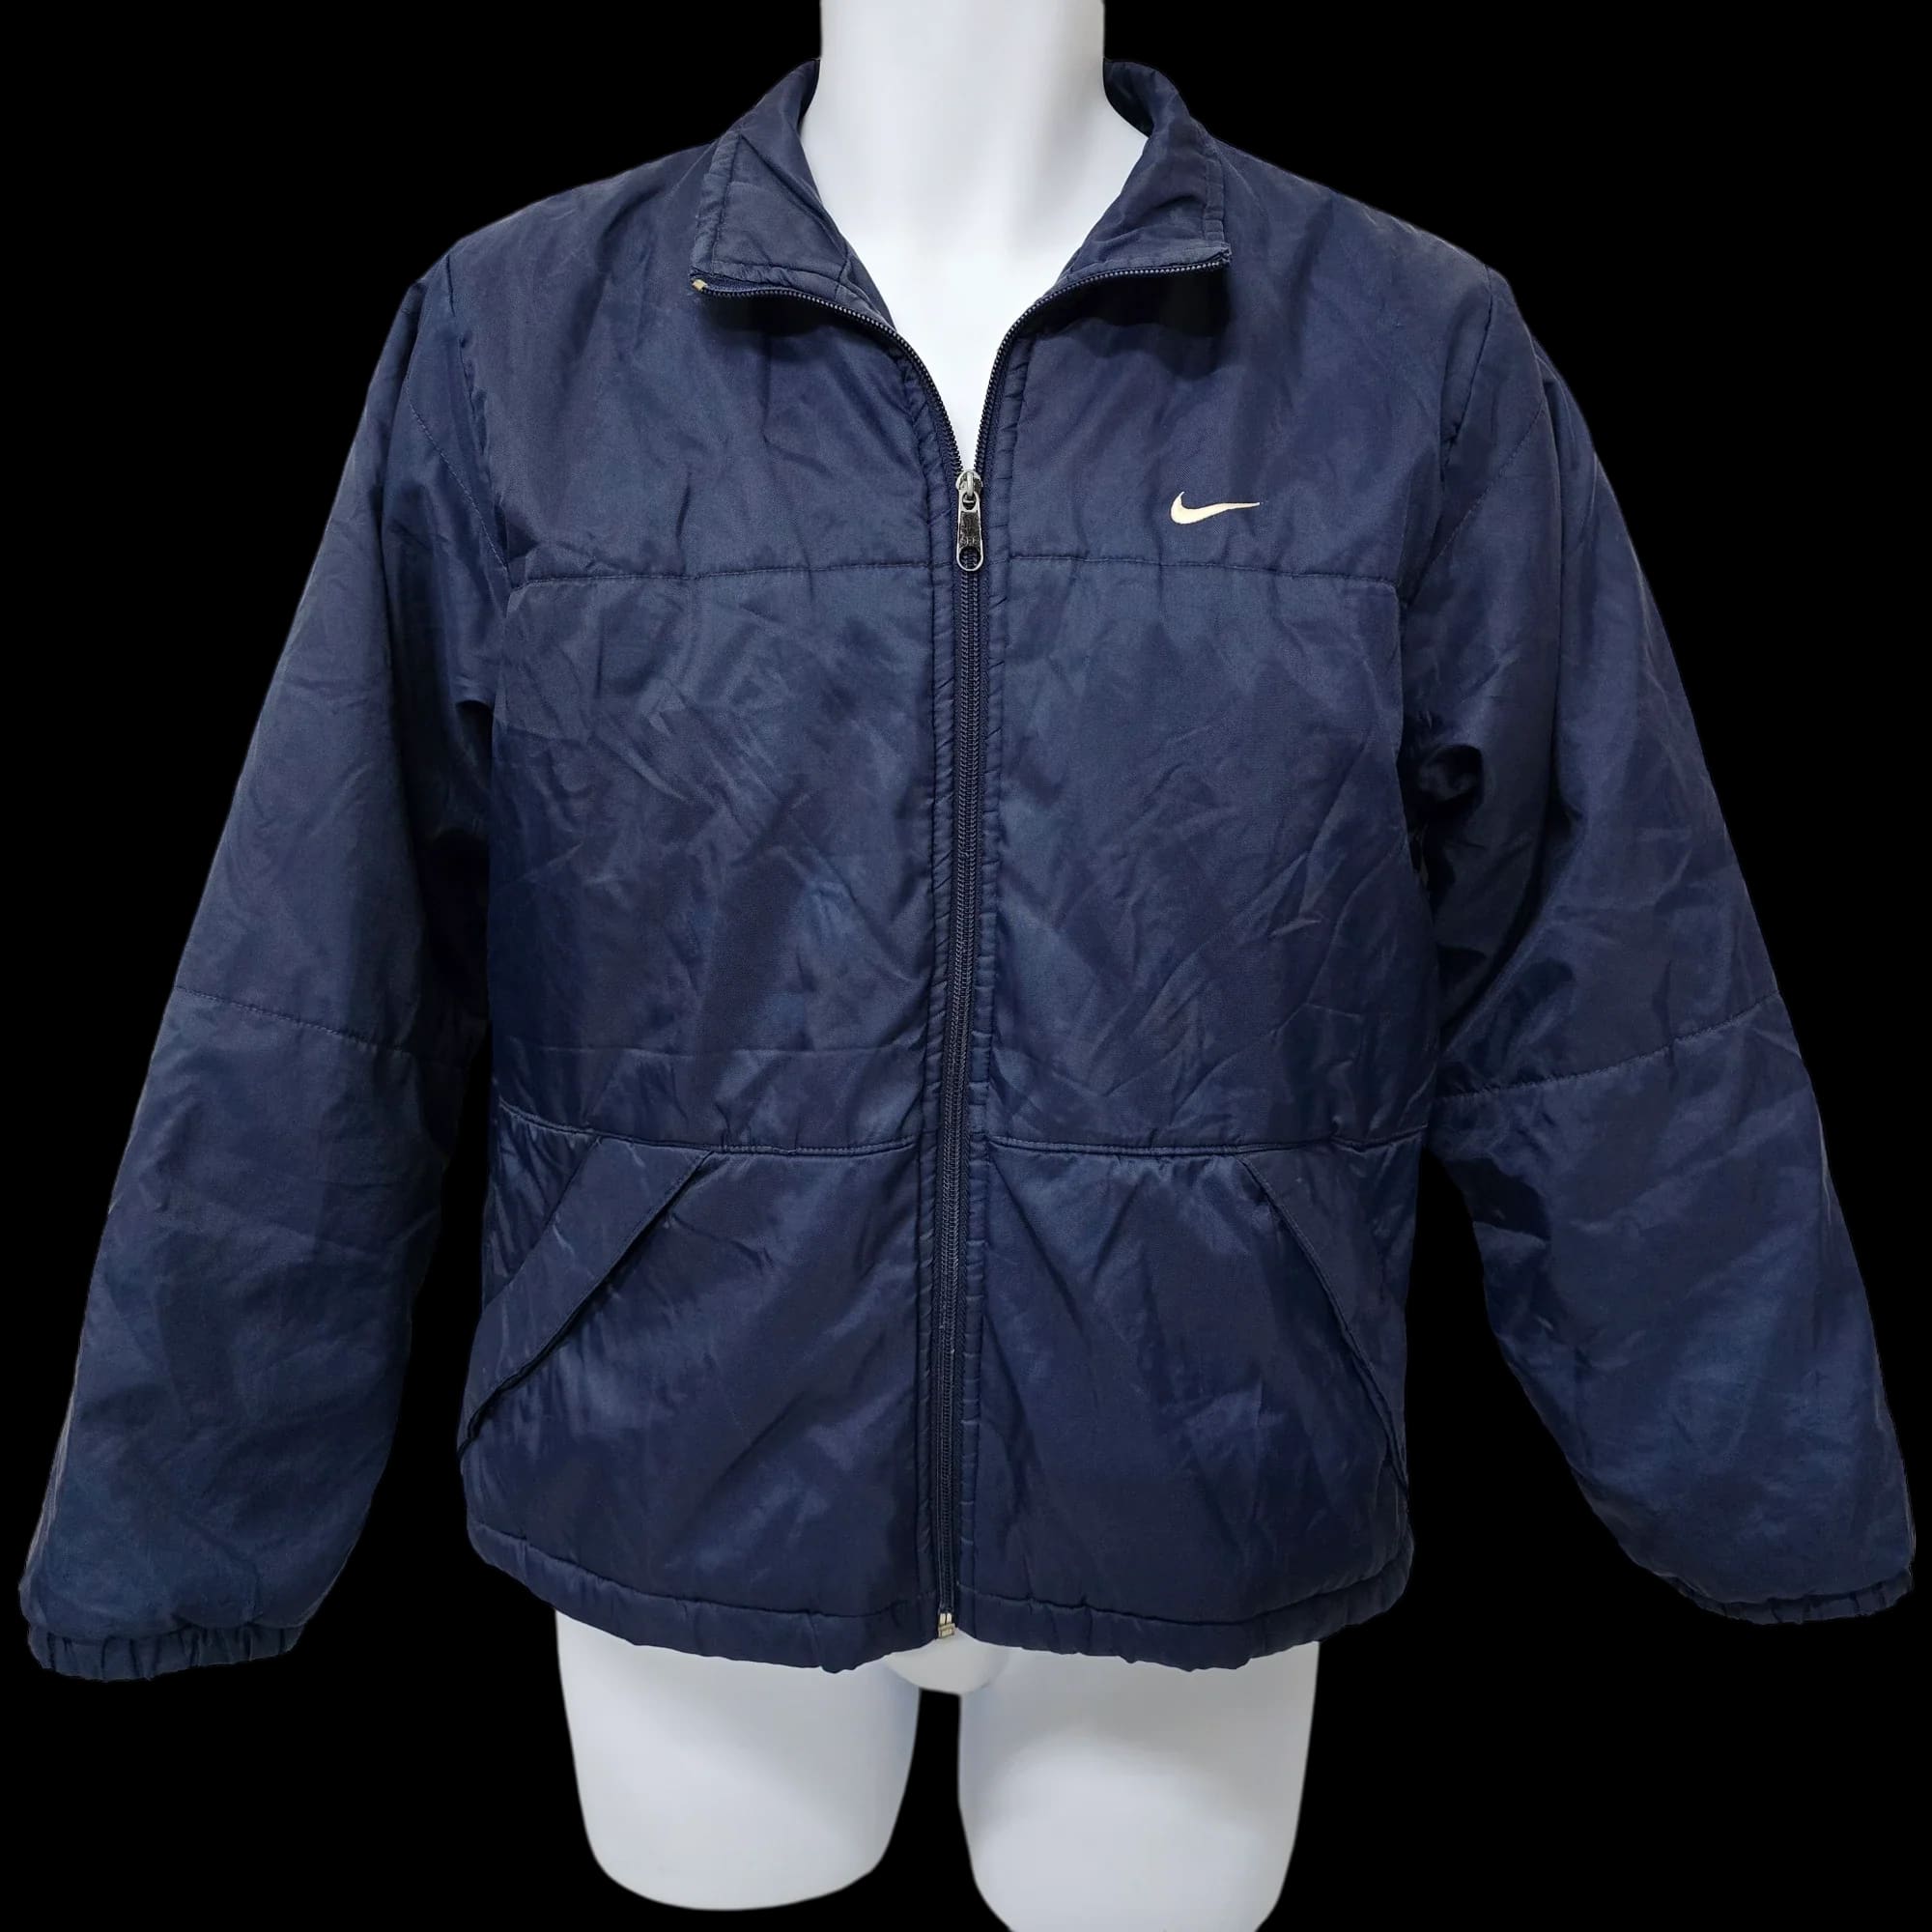 Unisex Nike Blue Bomber Jacket Coat UK Large - 1 - 3465